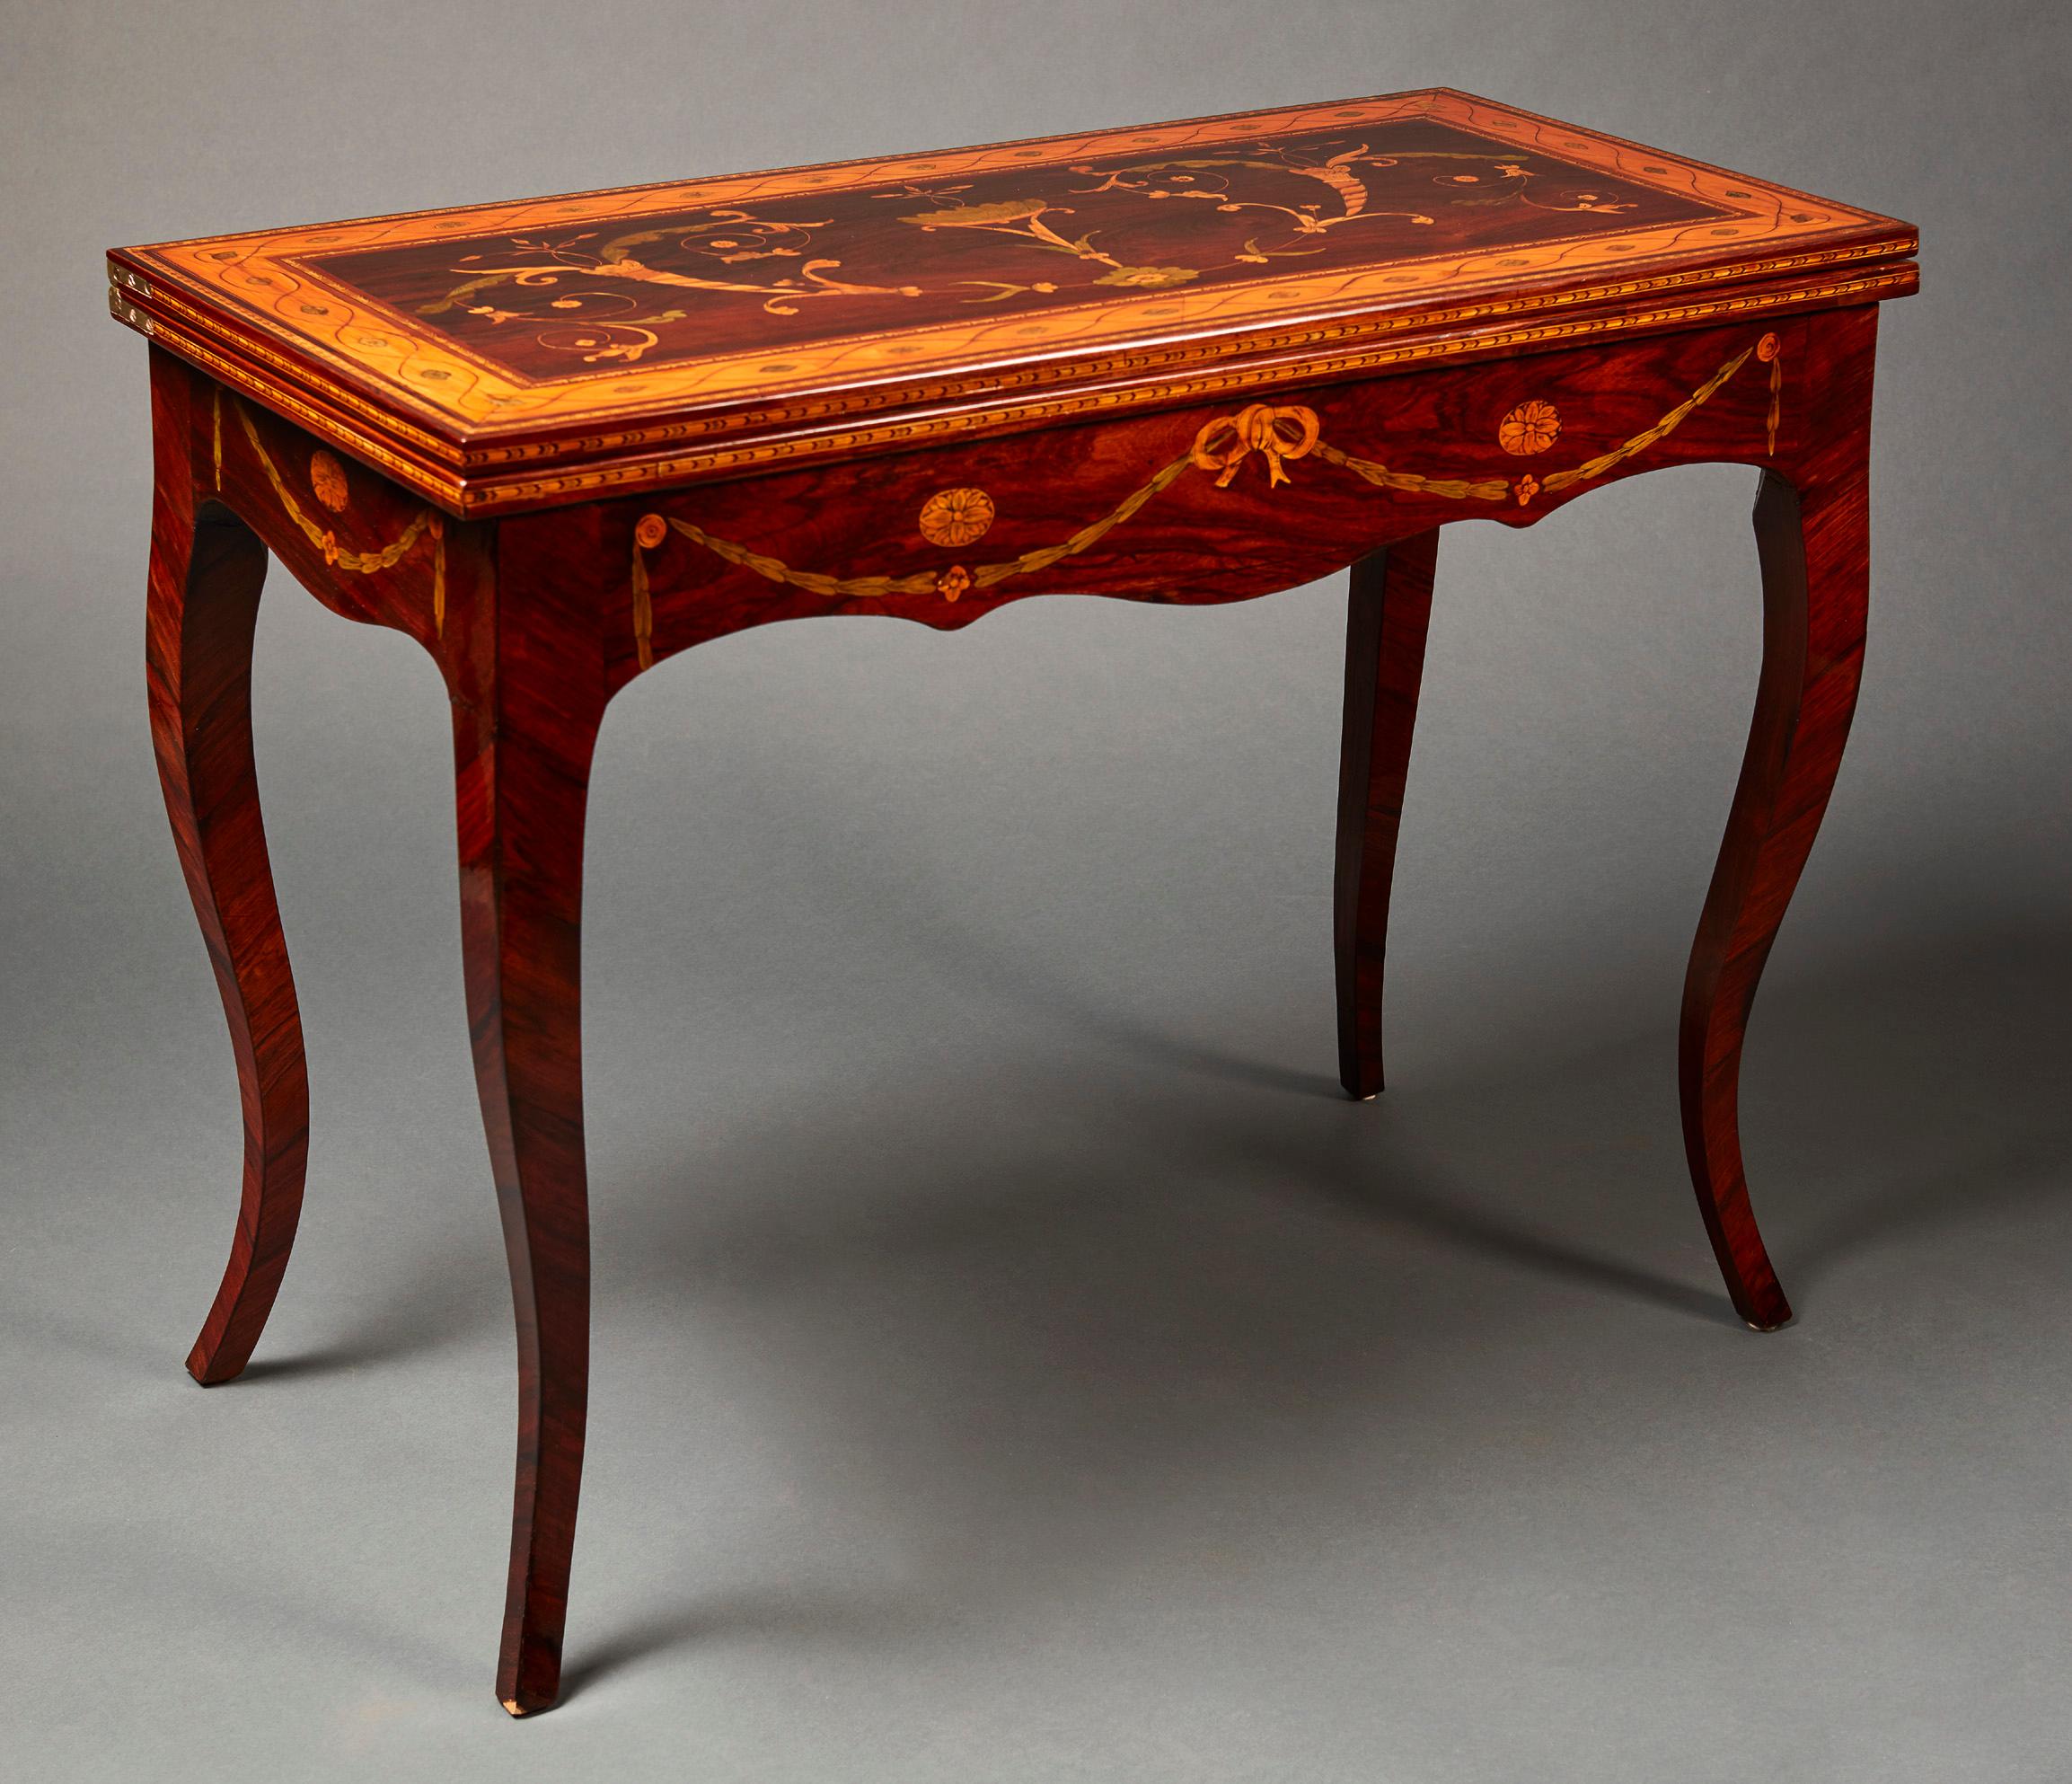 Ein feiner klassizistischer russischer Spieltisch aus Obstholz mit Intarsien und Parkett aus dem späten 18. Jahrhundert, wahrscheinlich aus Sankt Petersburg. Mit einem rechteckigen Dreh- und Klappdeckel, verziert mit aufwändigem